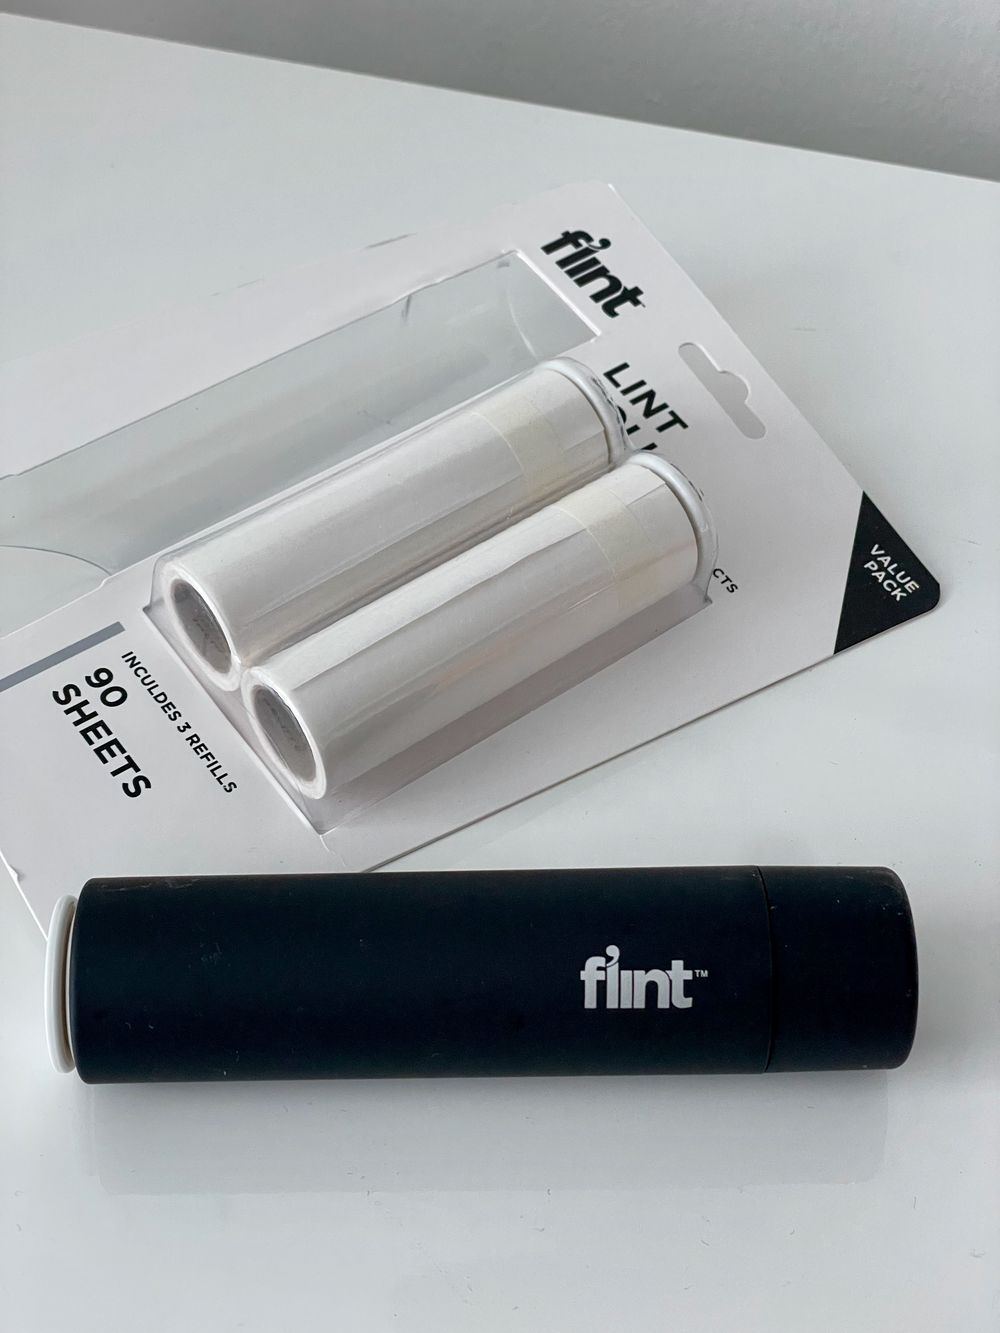 Flint lint roller review IMG_1160